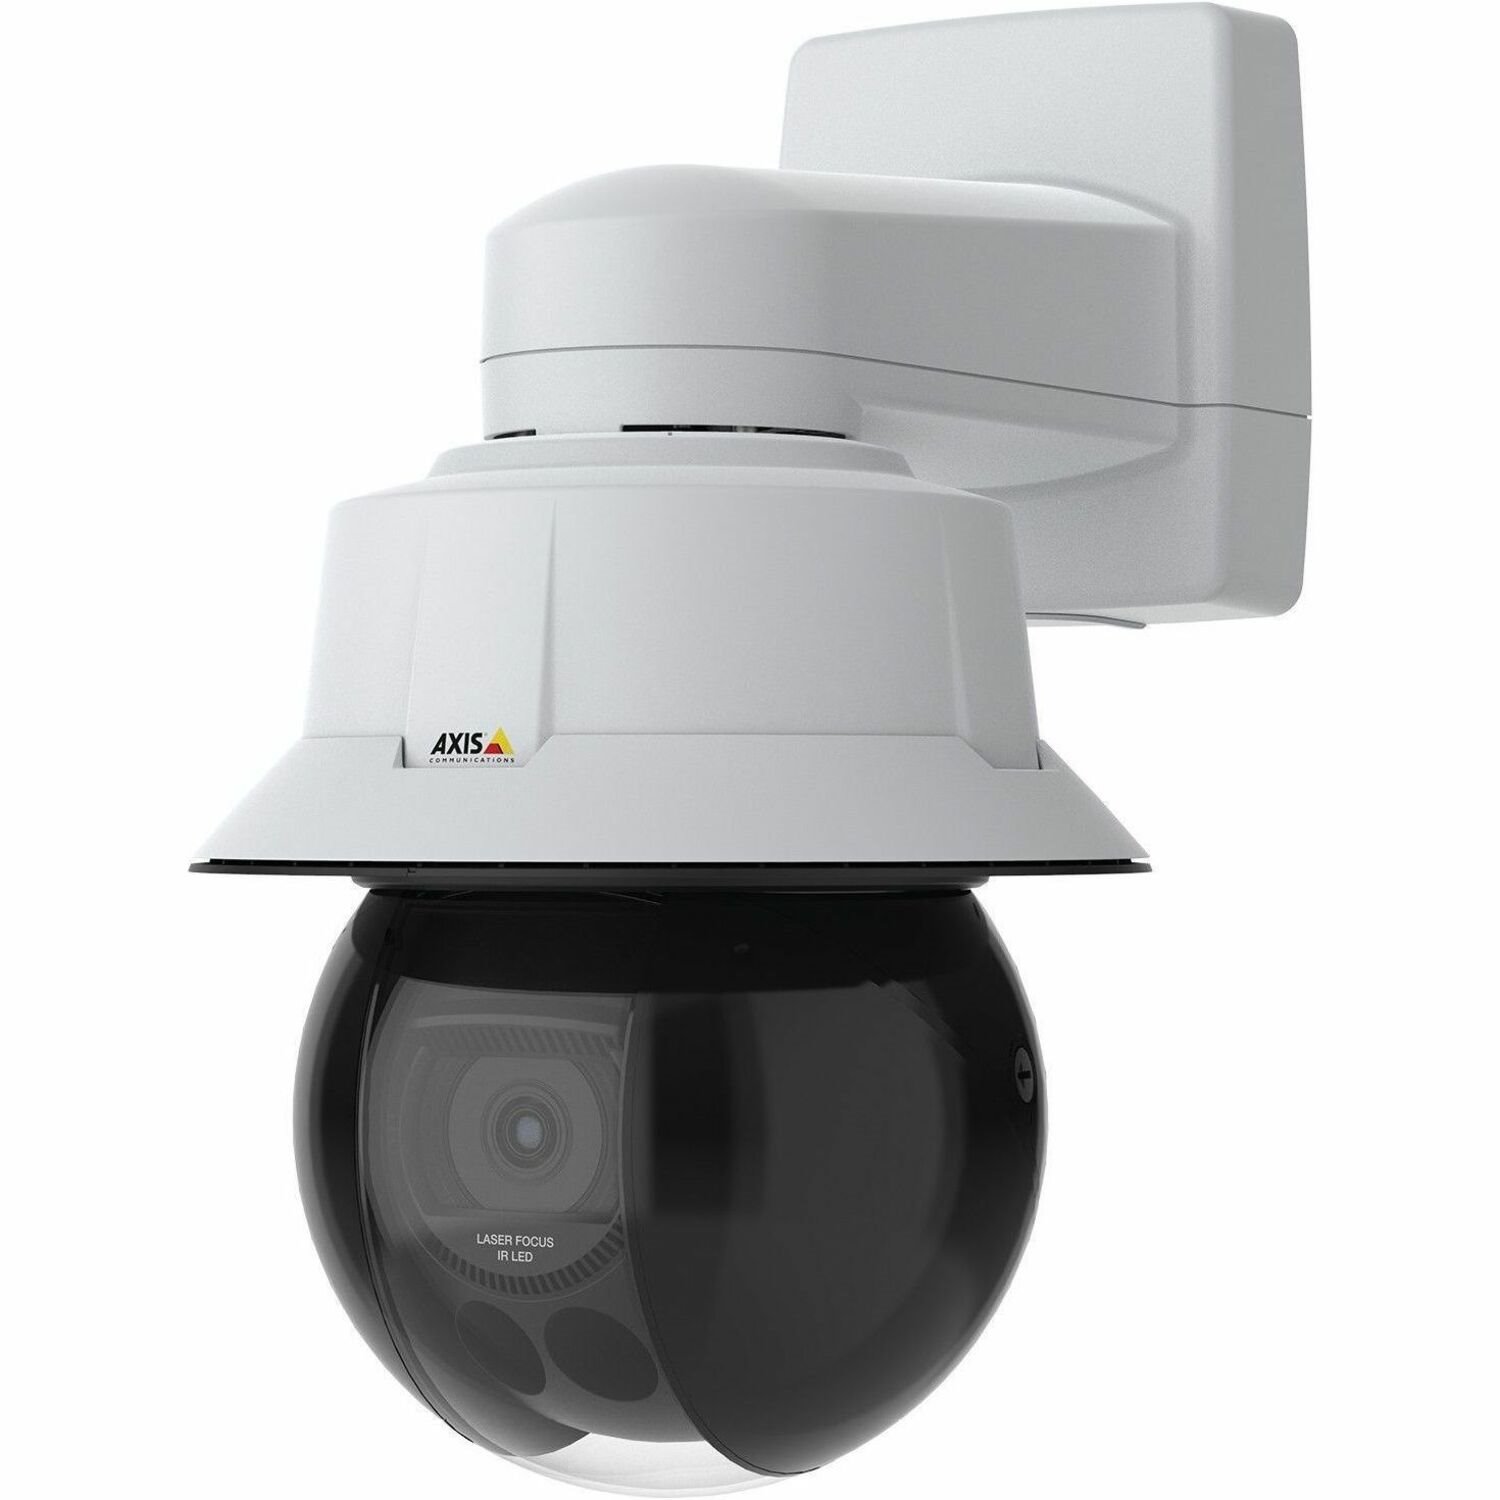 AXIS Q6315-LE 2 Megapixel Indoor/Outdoor Network Camera - Colour